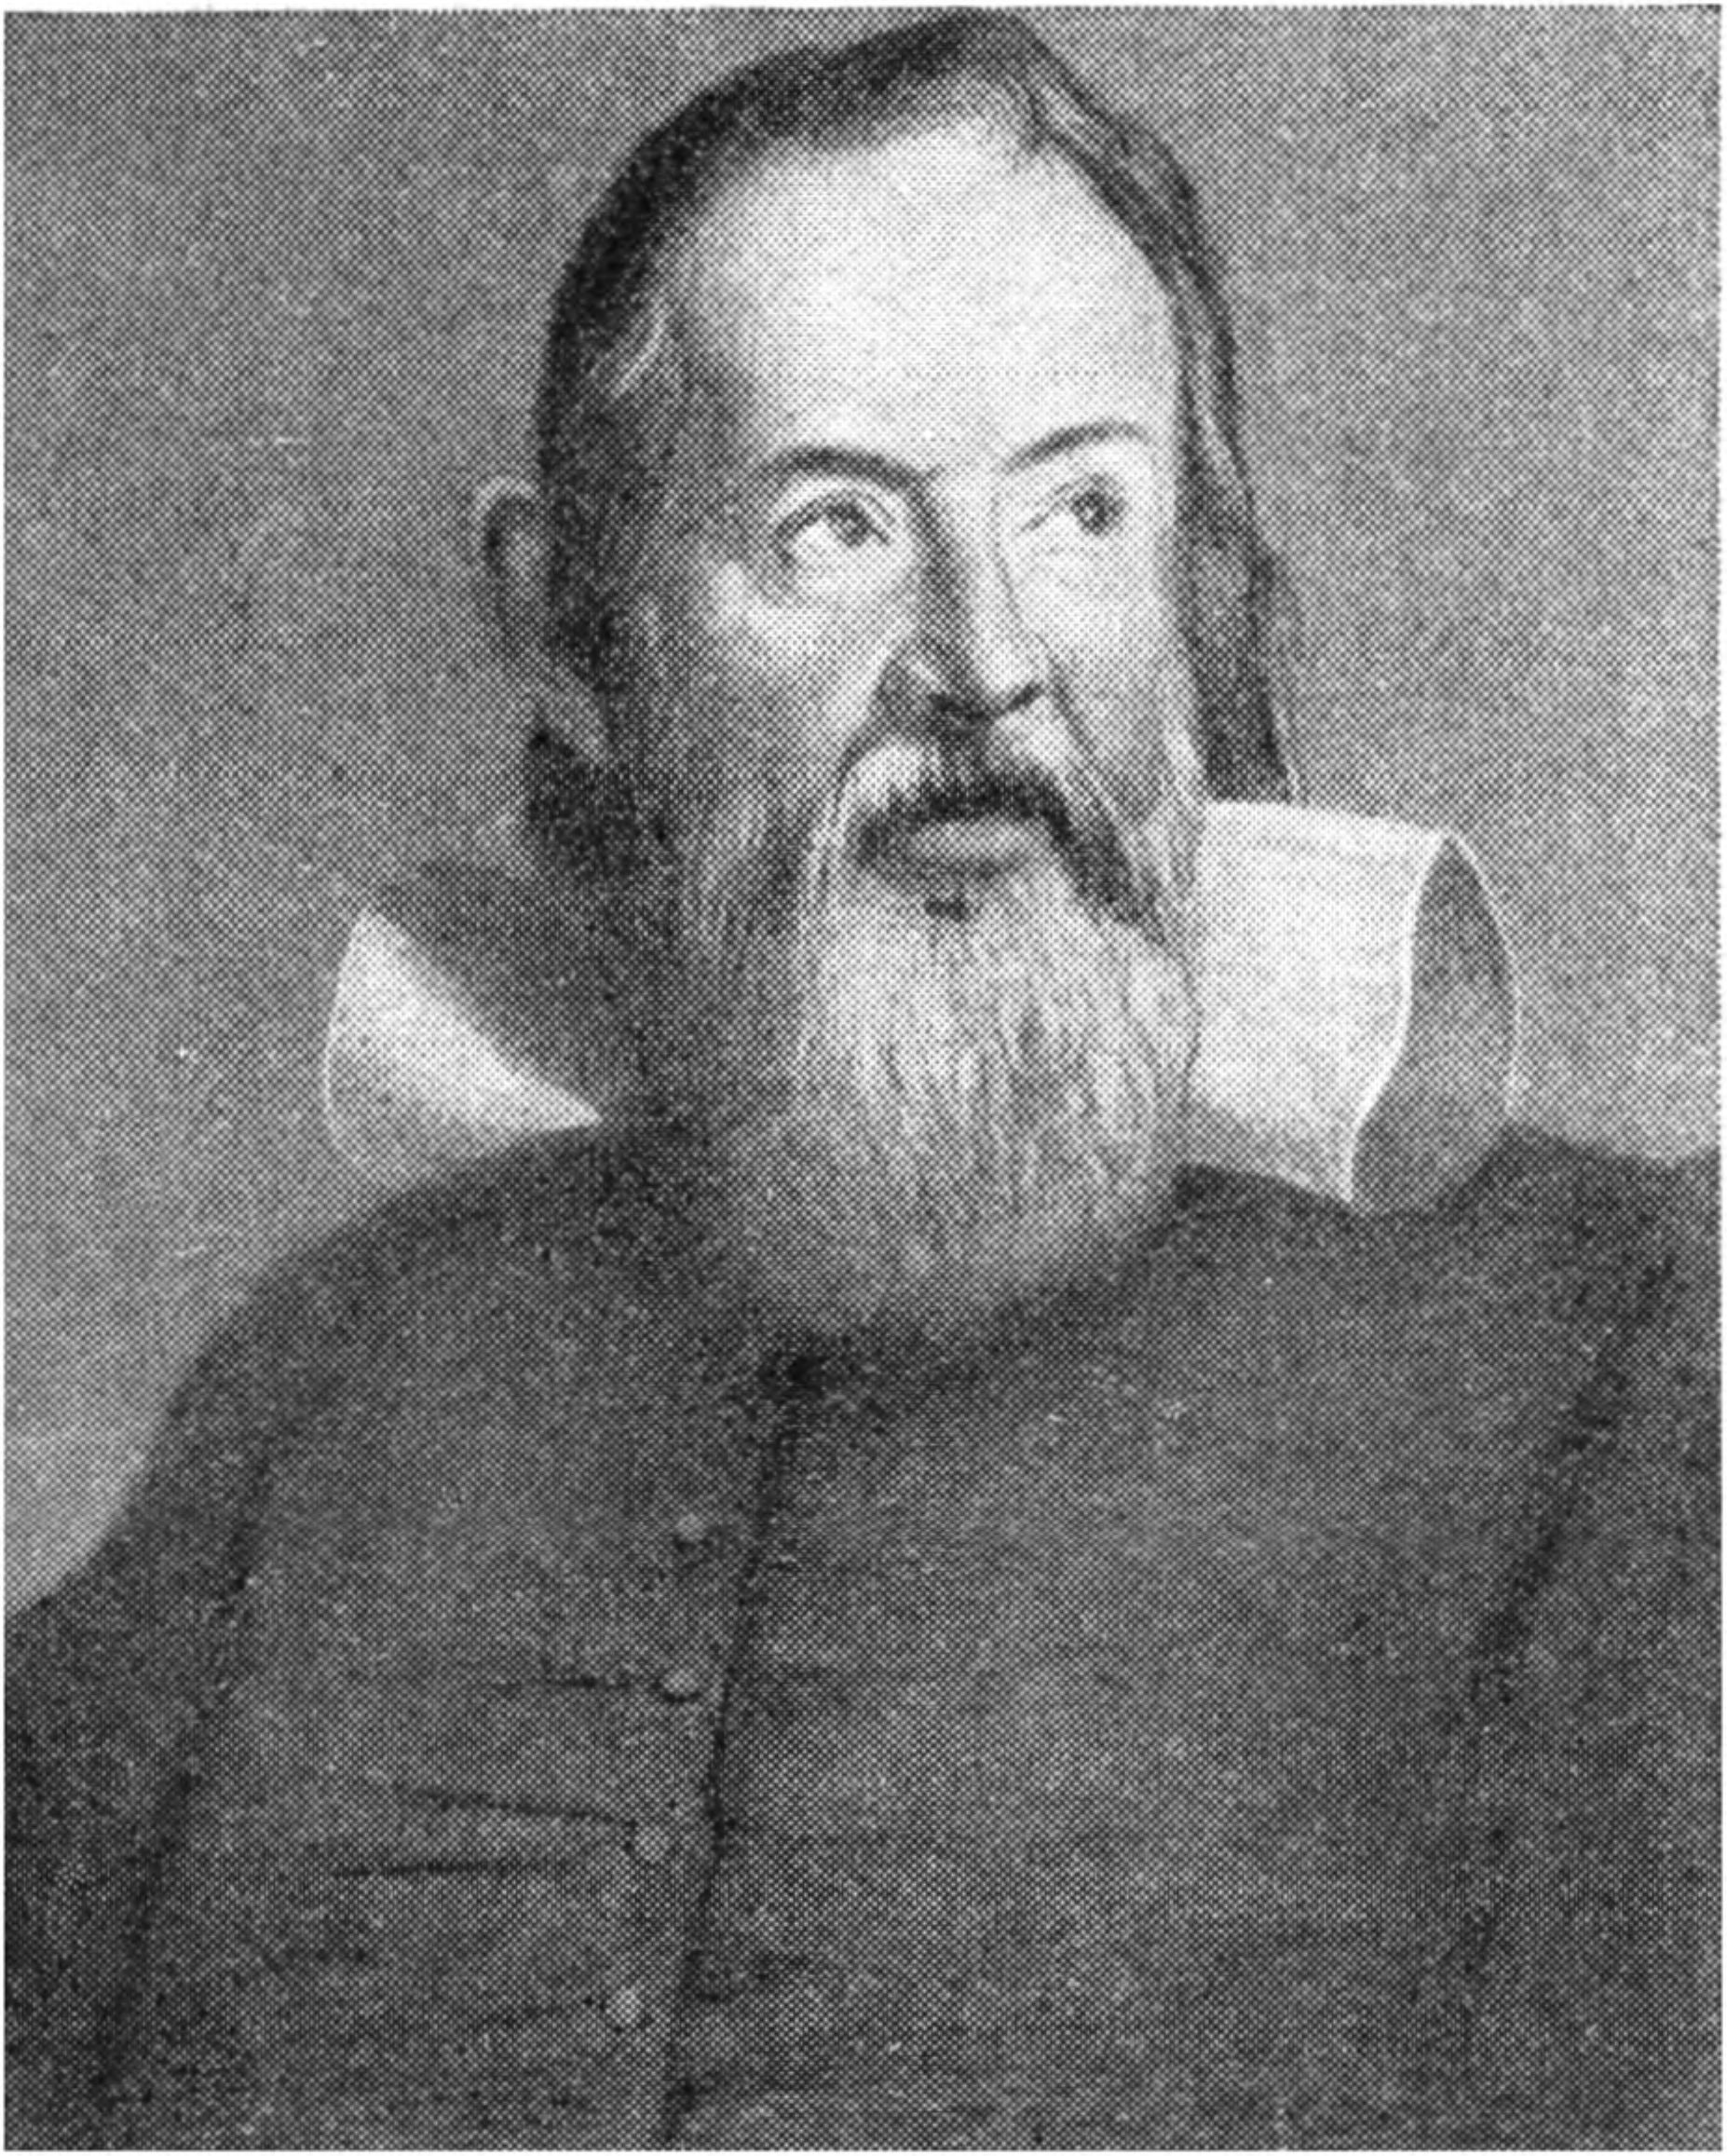 Рис. 20. Галилео Галилей (с портрета работы Сустерманса 1604 г.)